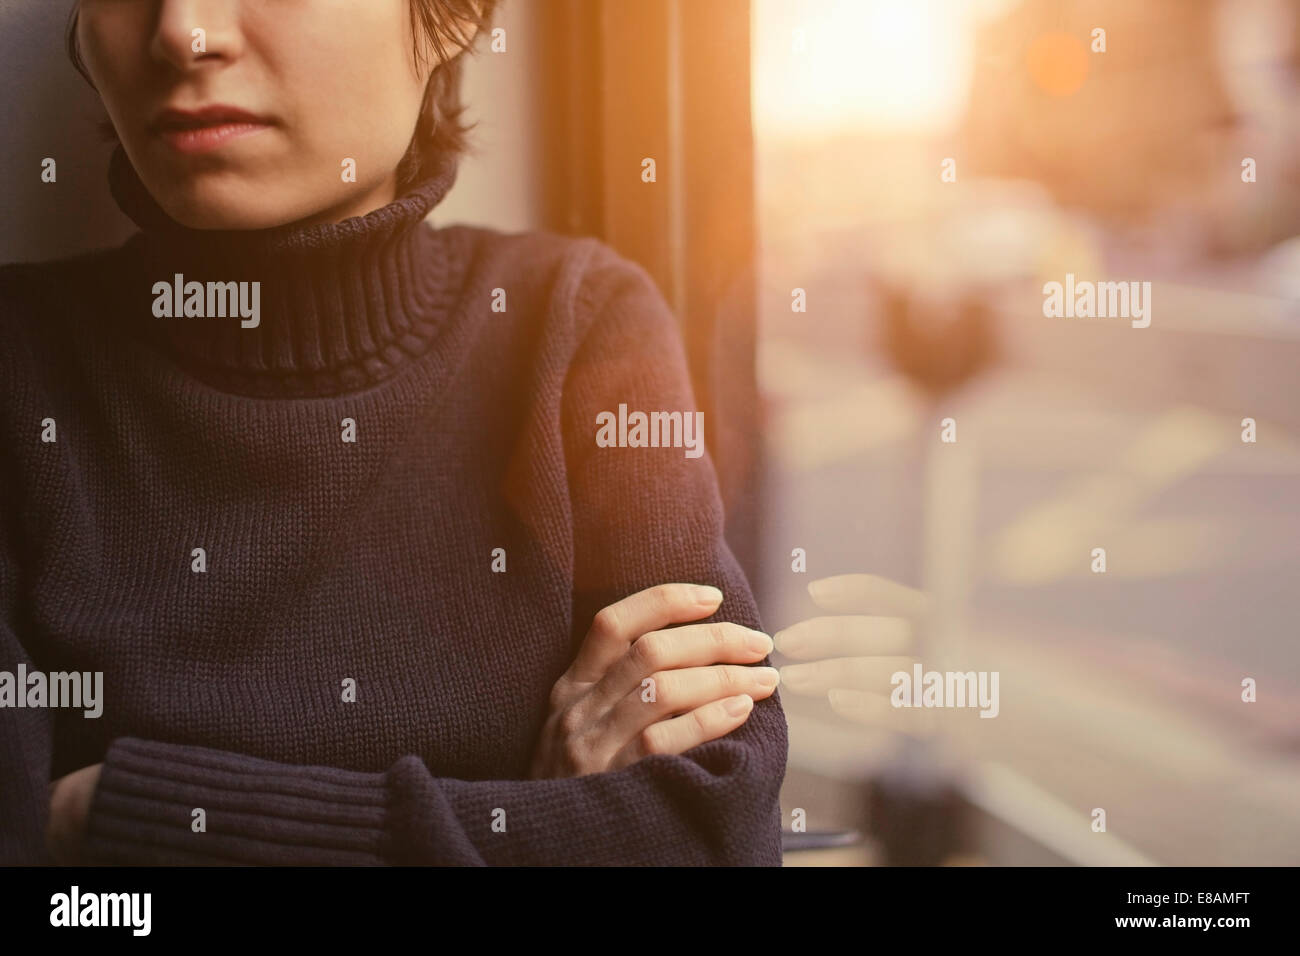 Ritagliato Ritratto di giovane donna con le braccia incrociate accanto alla finestra Foto Stock